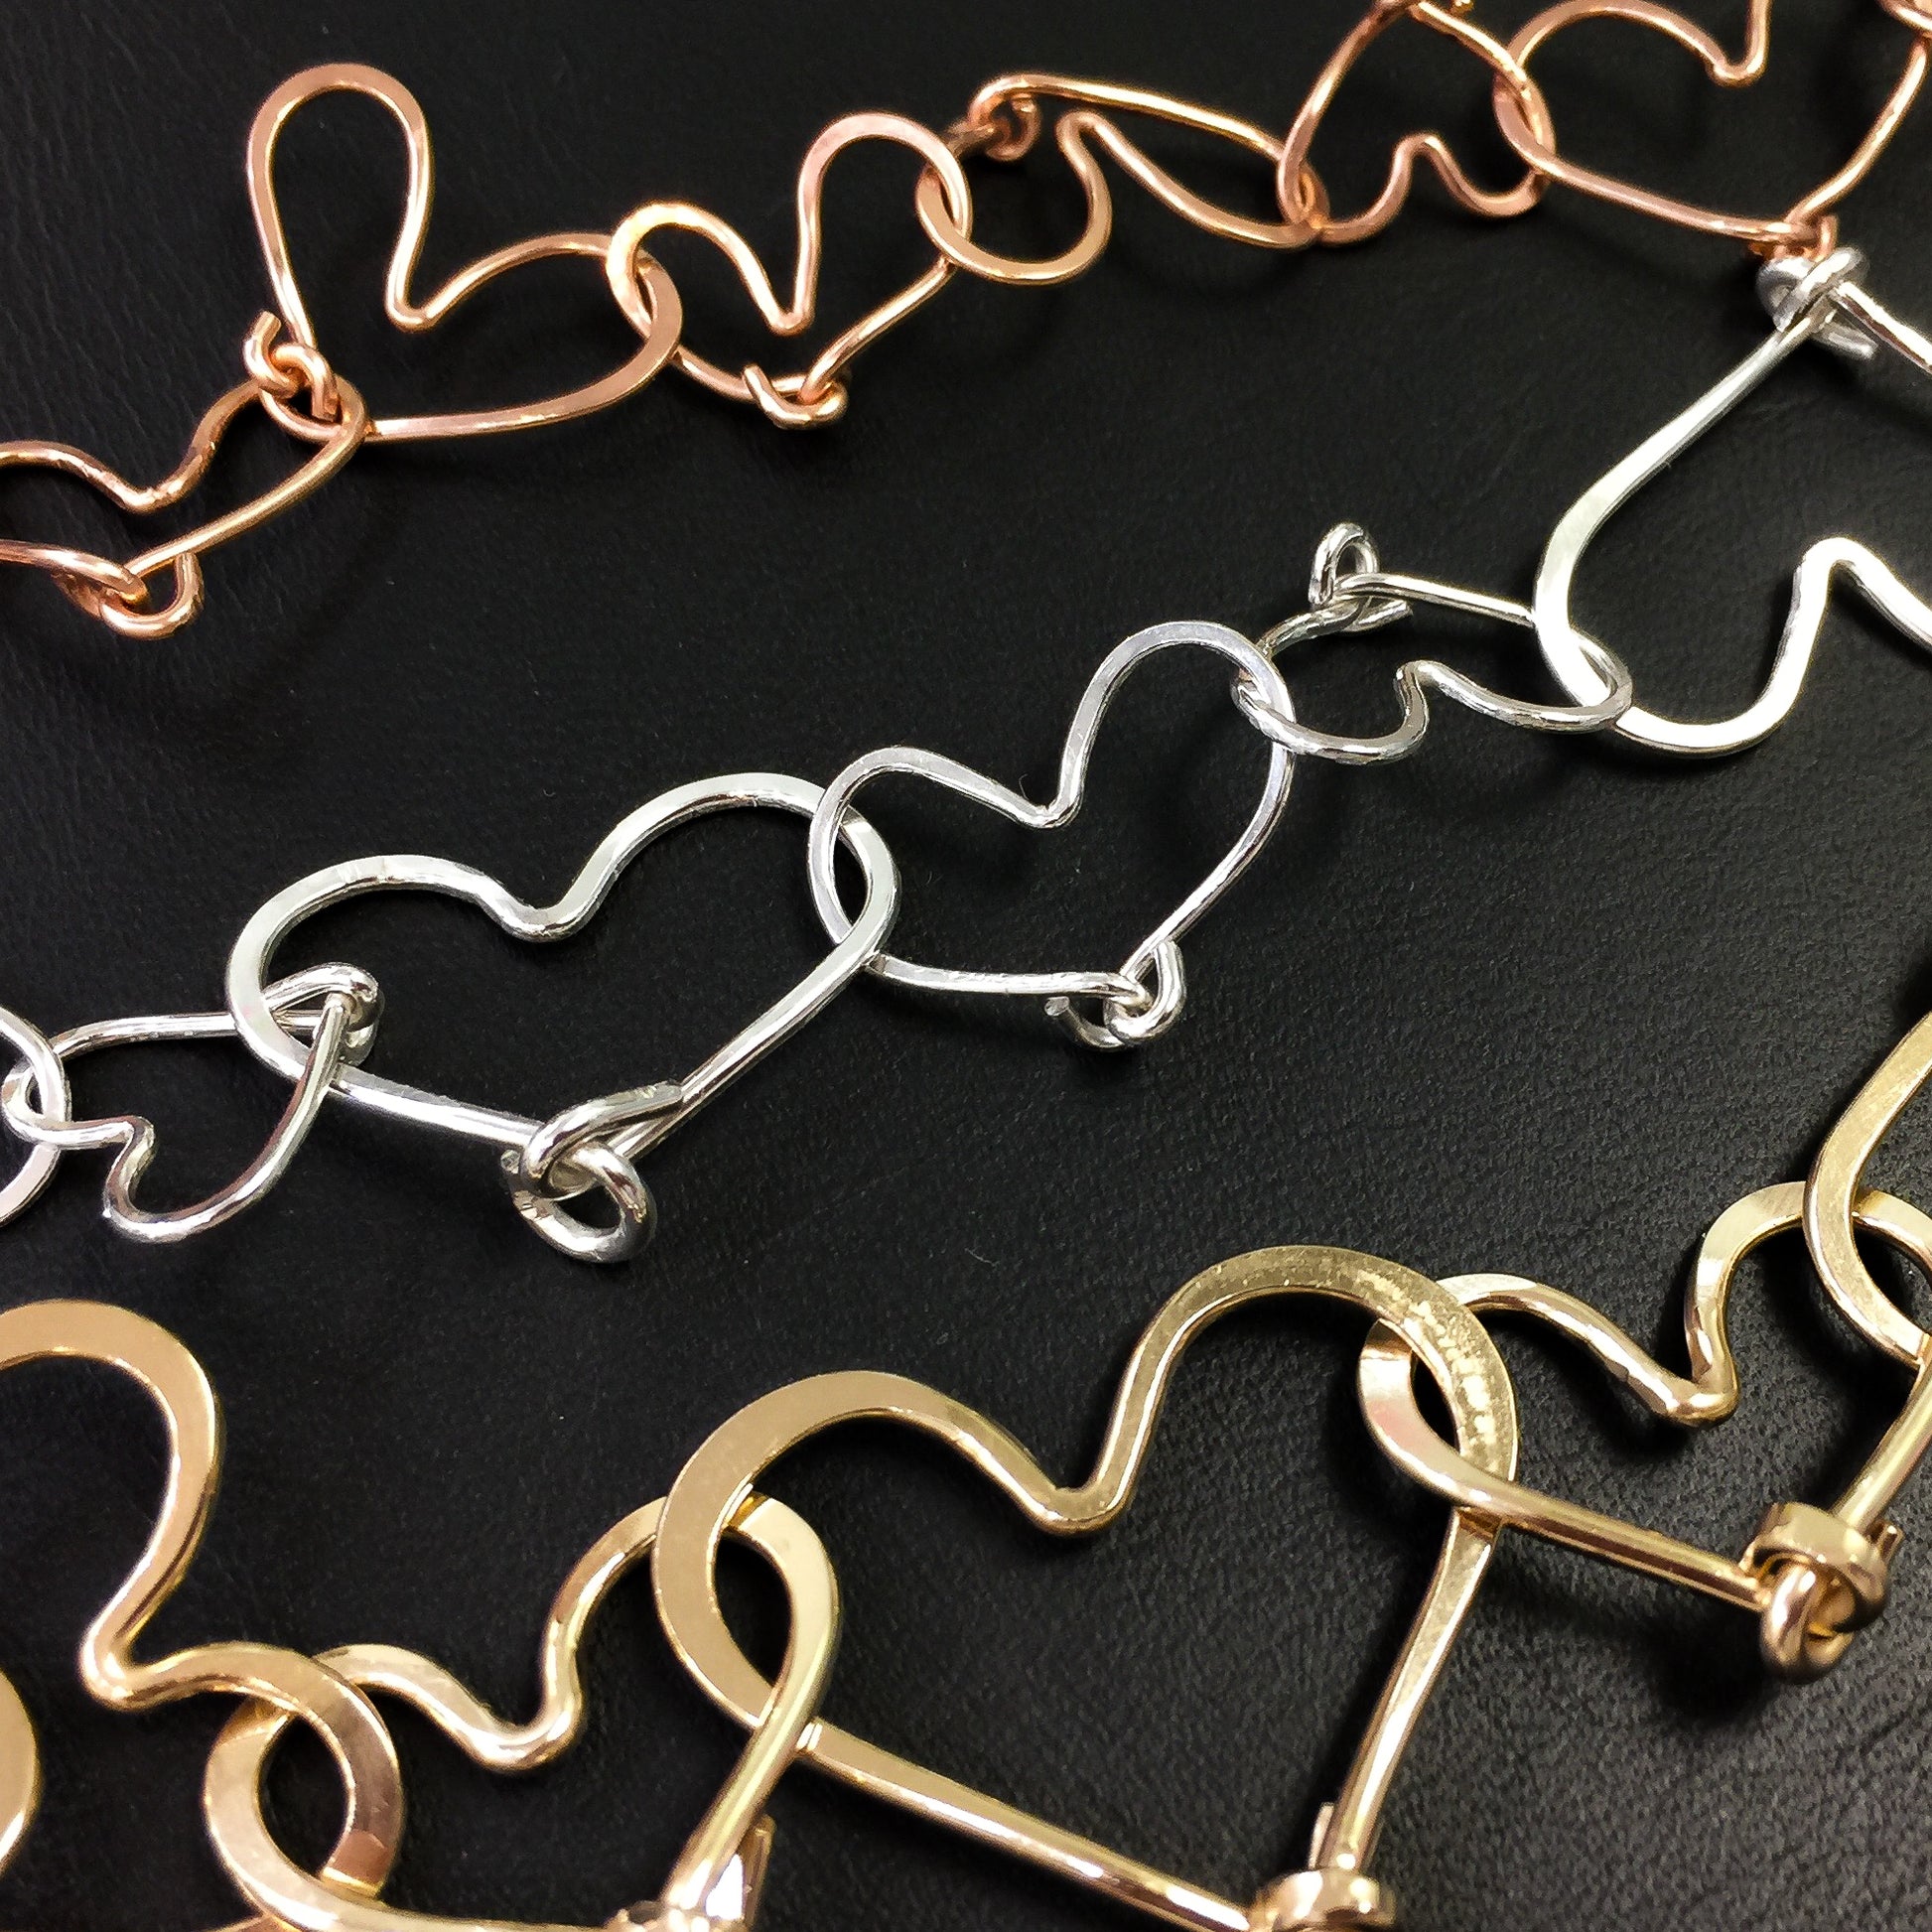 24 Gauge Round Half Hard Copper Wire: Wire Jewelry, Wire Wrap Tutorials